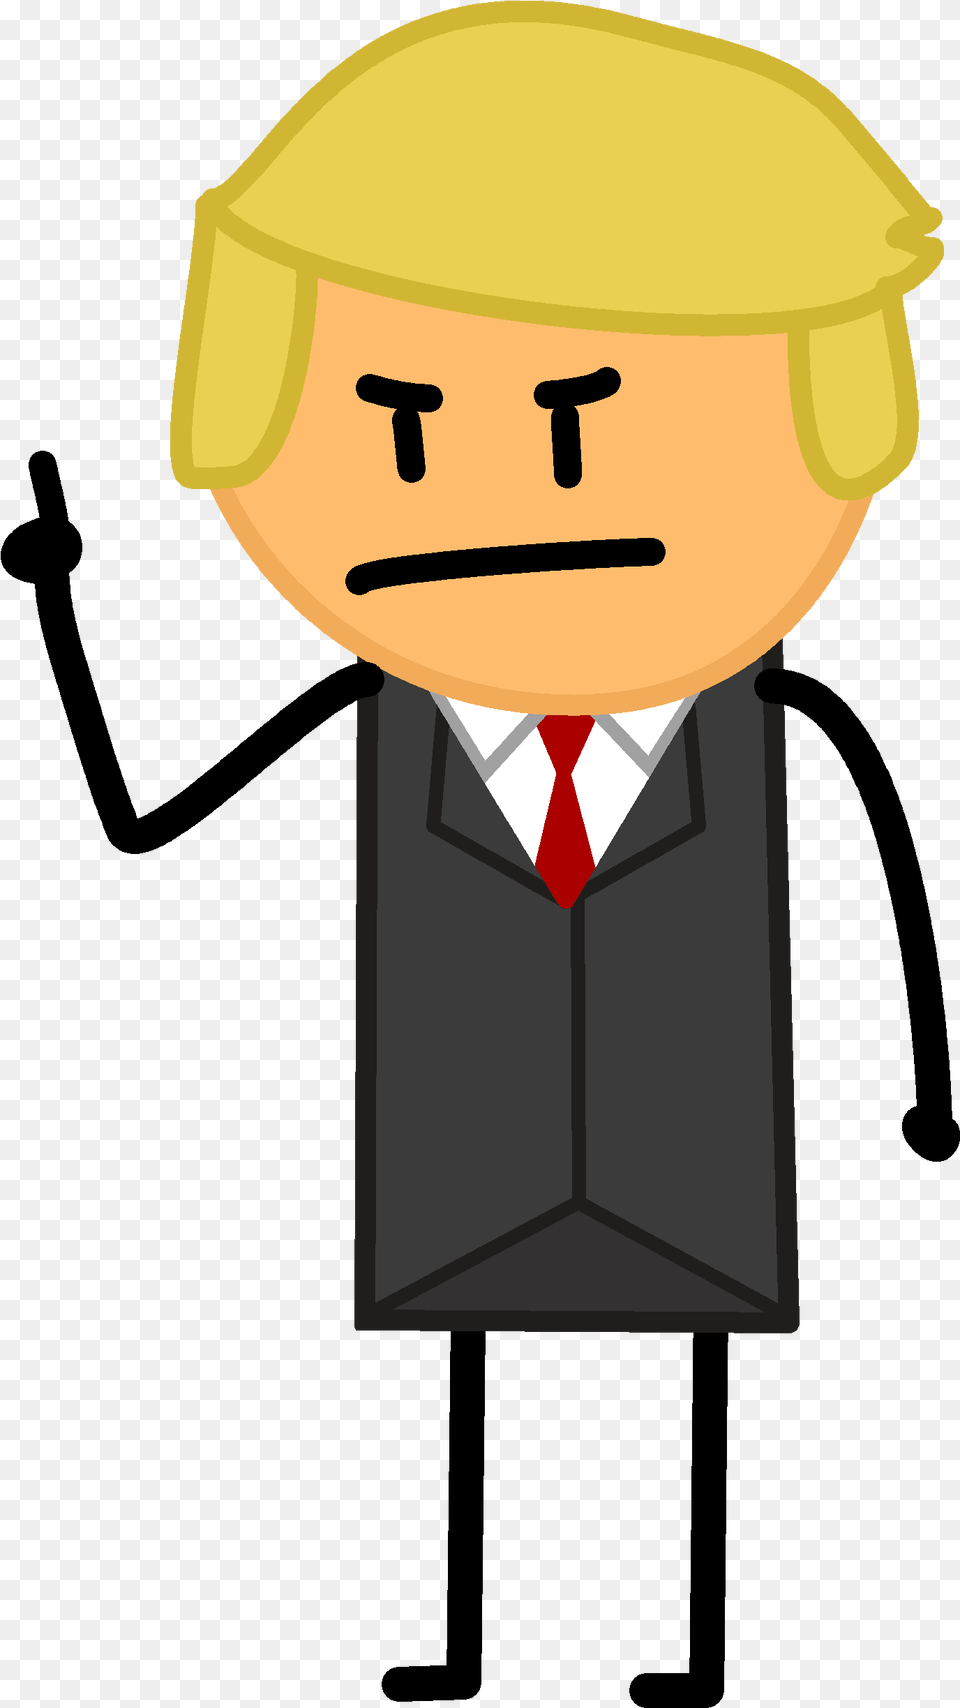 Donald Trump Pic Cartoon, Accessories, Tie, Helmet, Hardhat Png Image